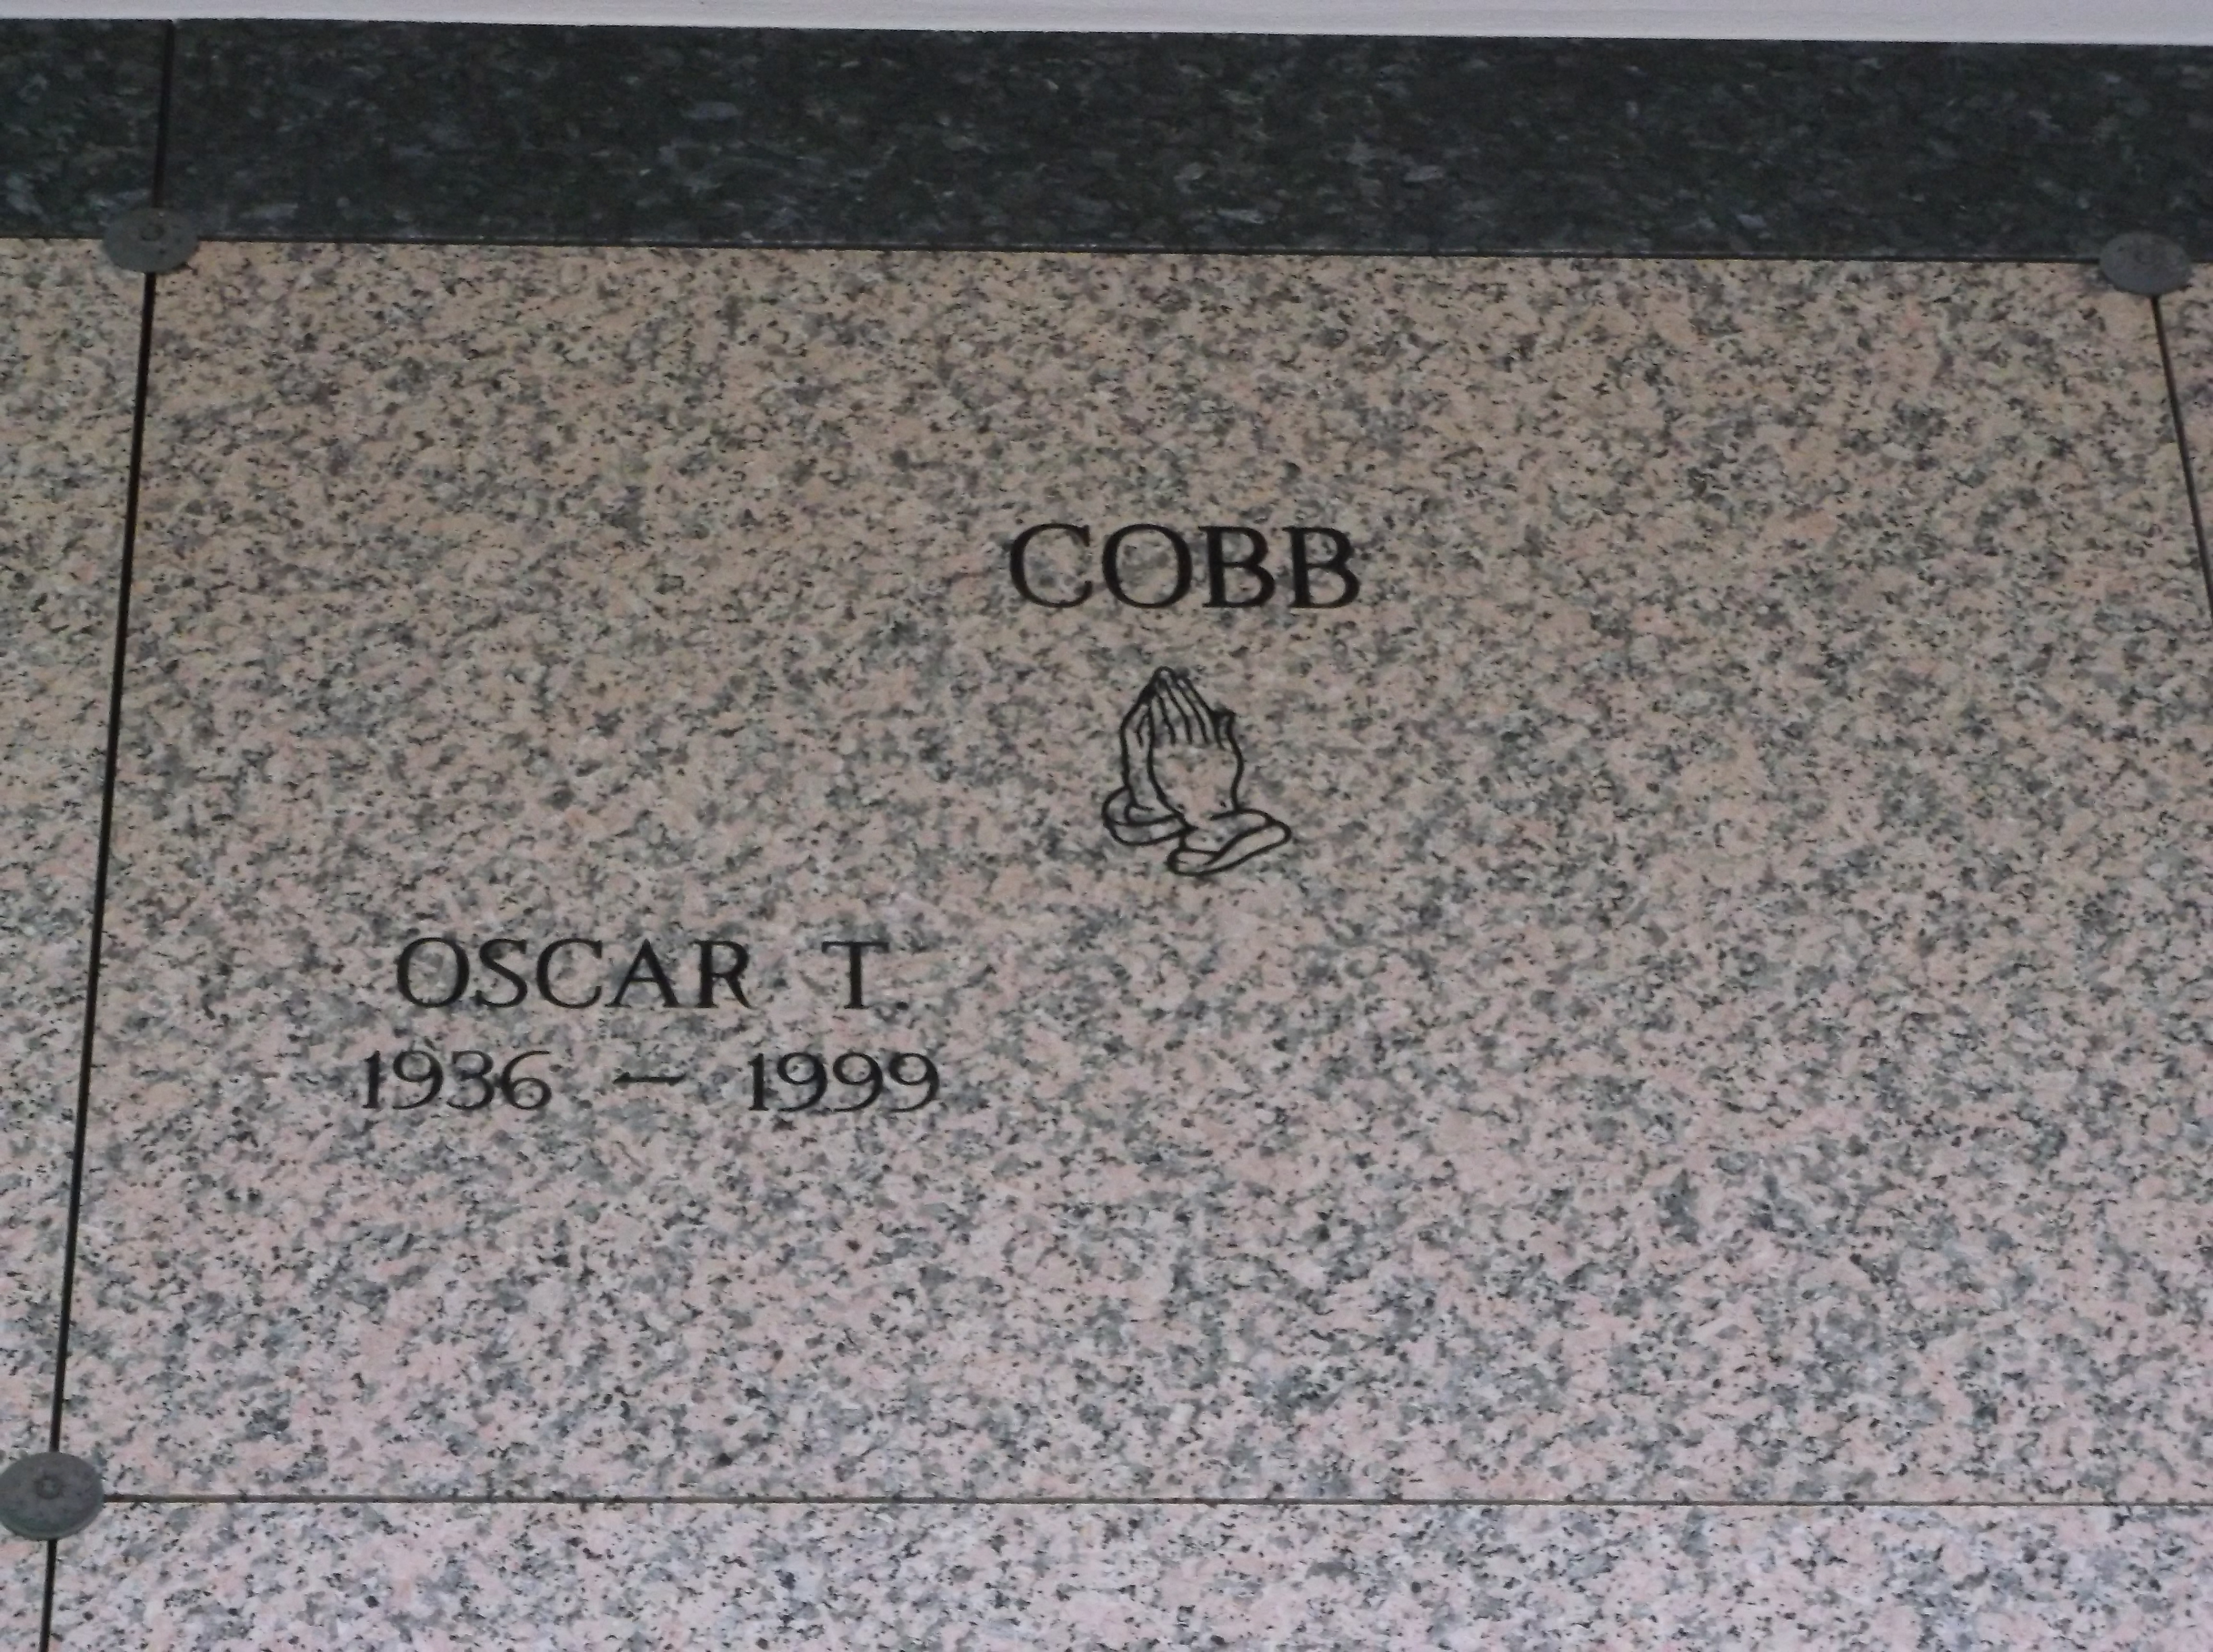 Oscar T Cobb